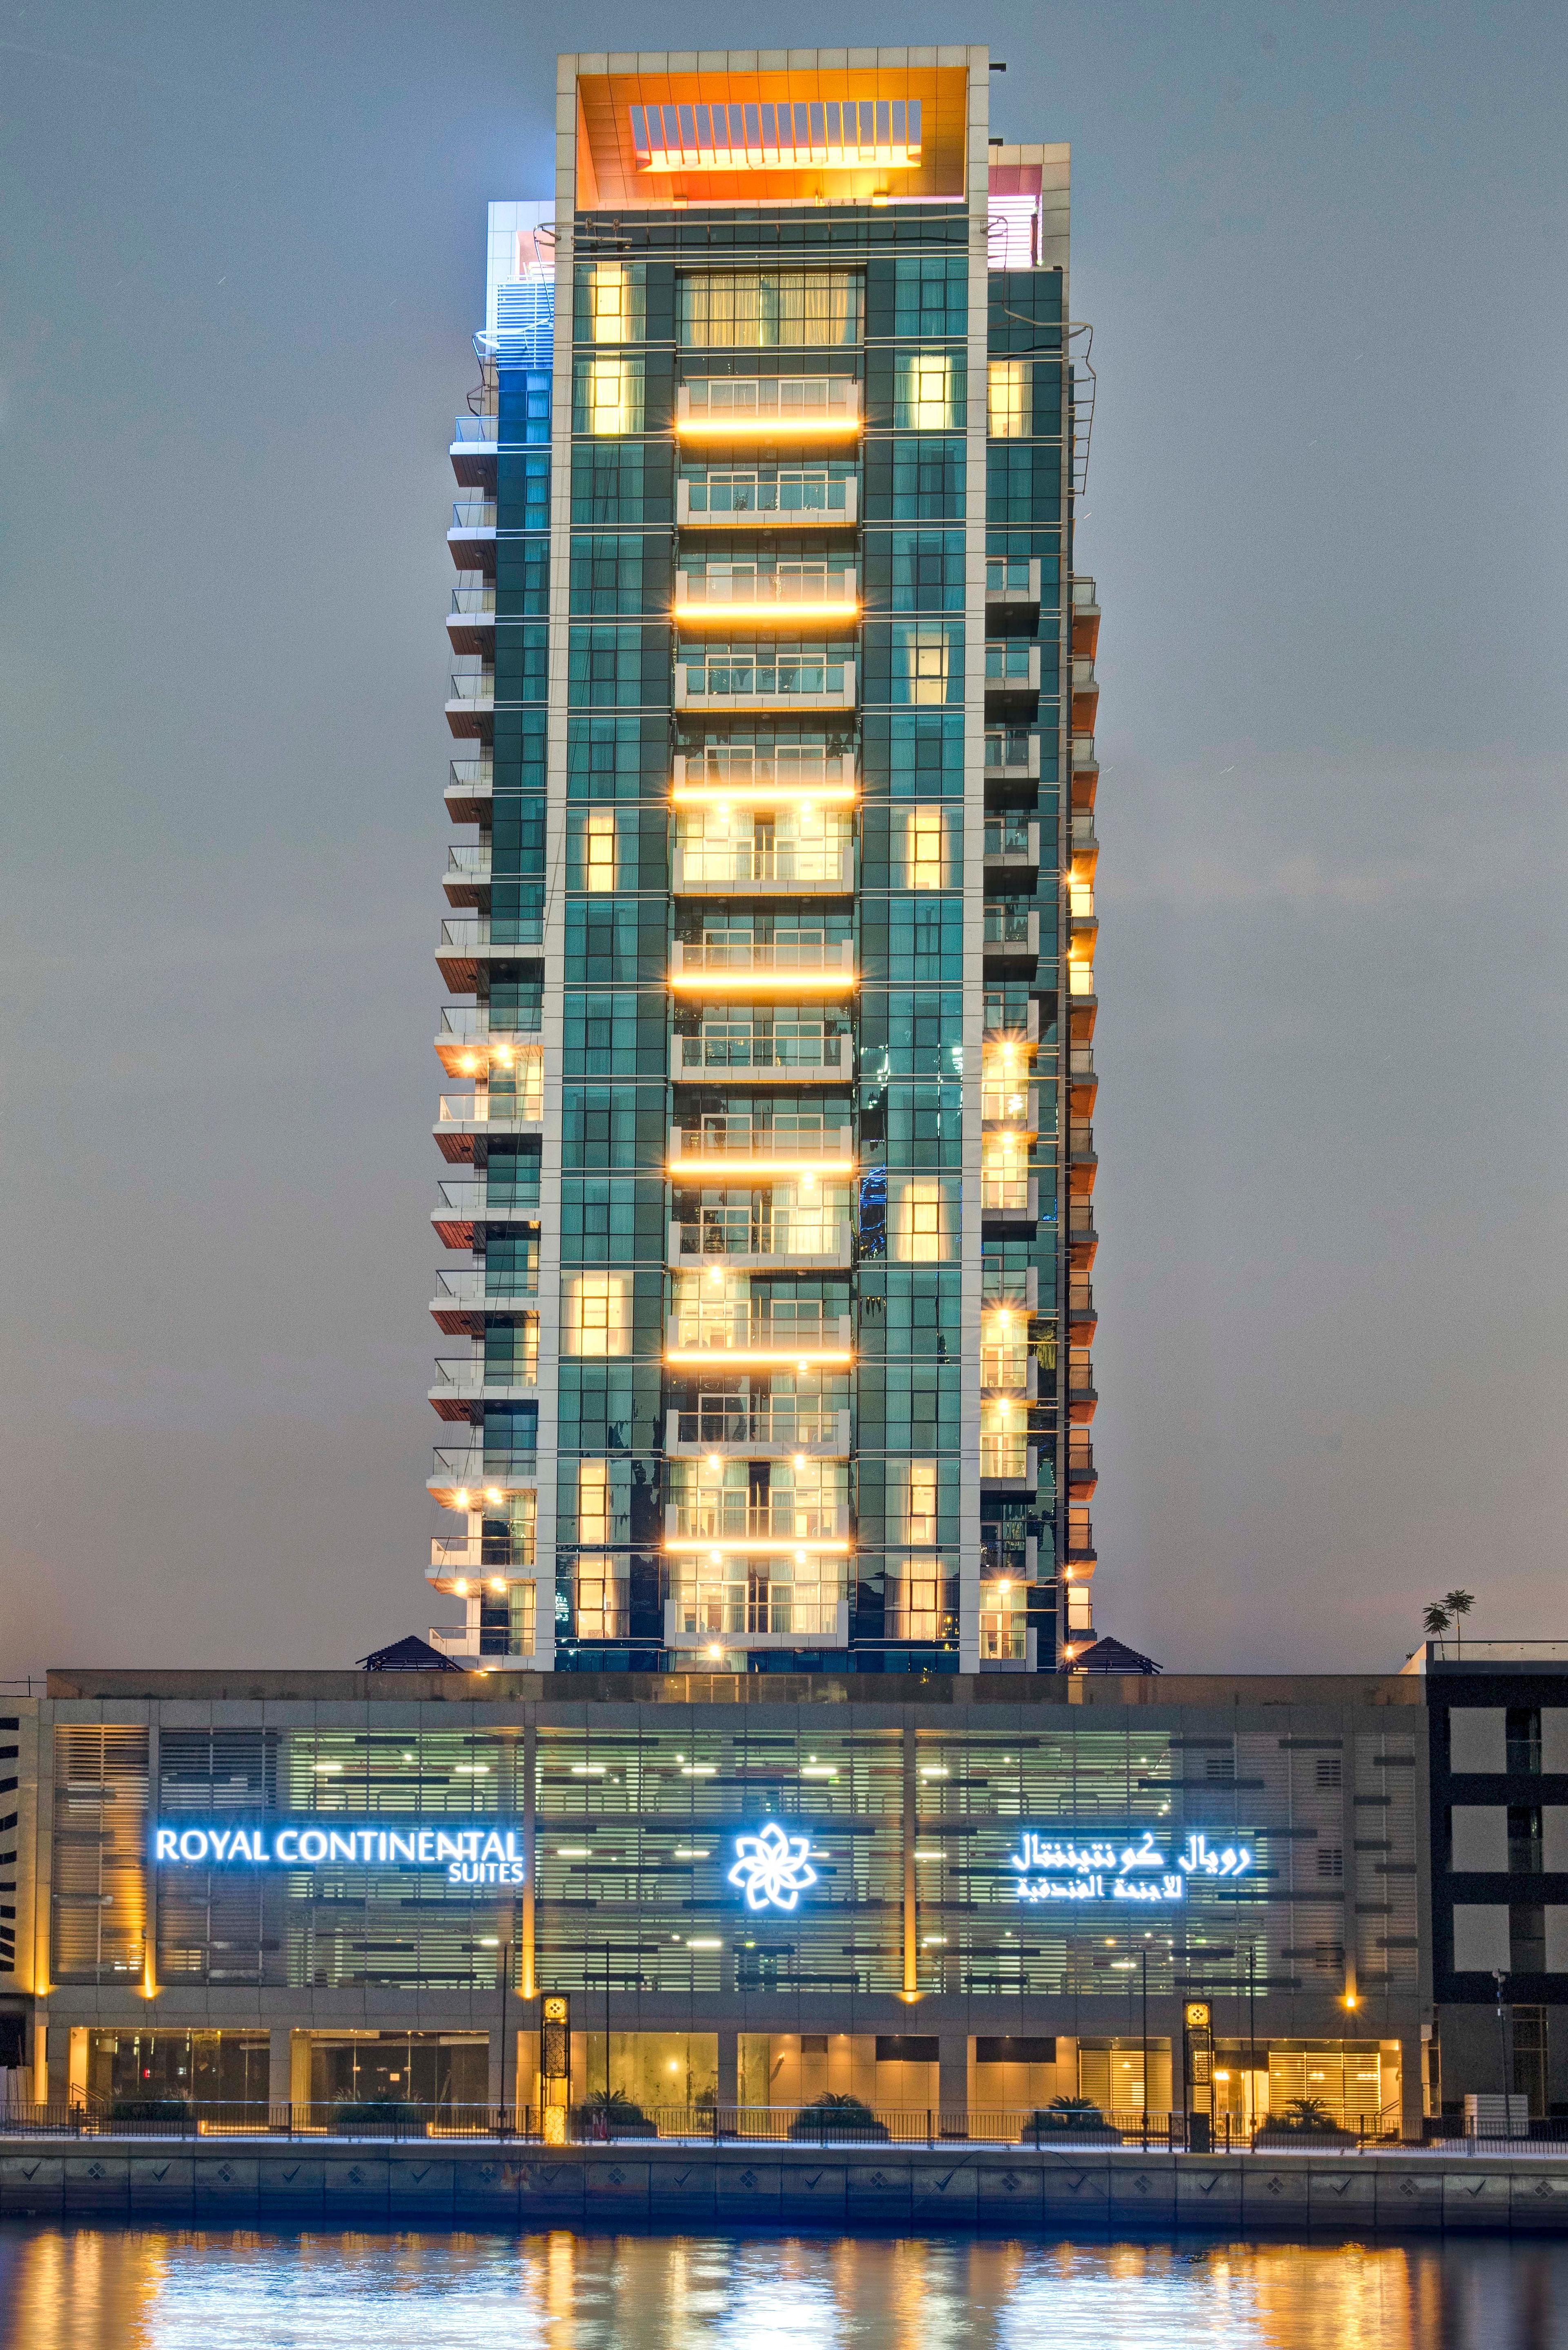 Royal Continental Suites in Dubai, United Arab Emirates